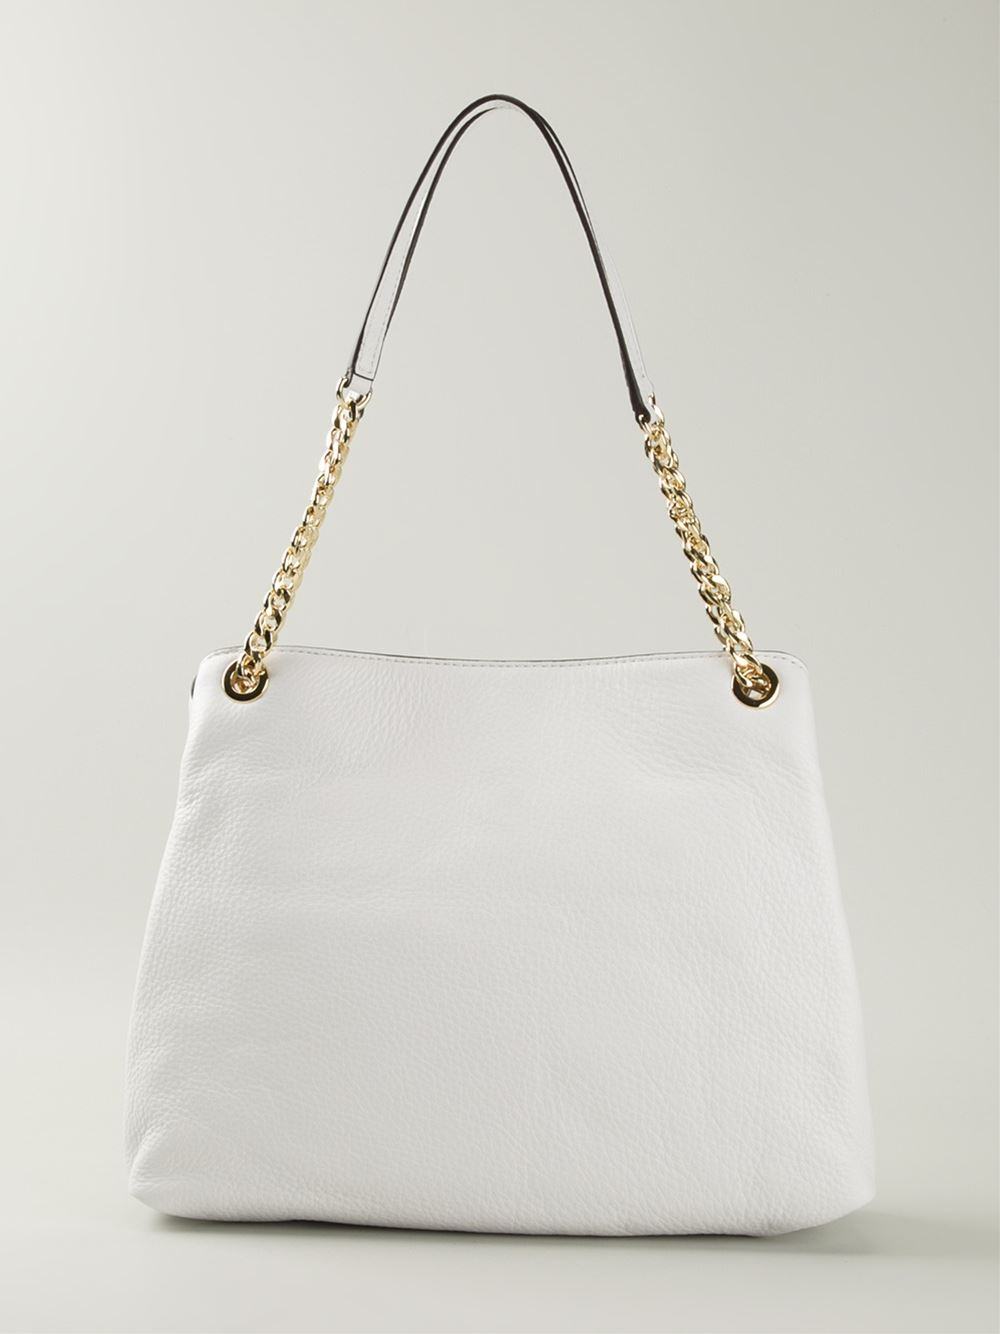 Buy the Michael Kors Jet Set Chain Shoulder Bag